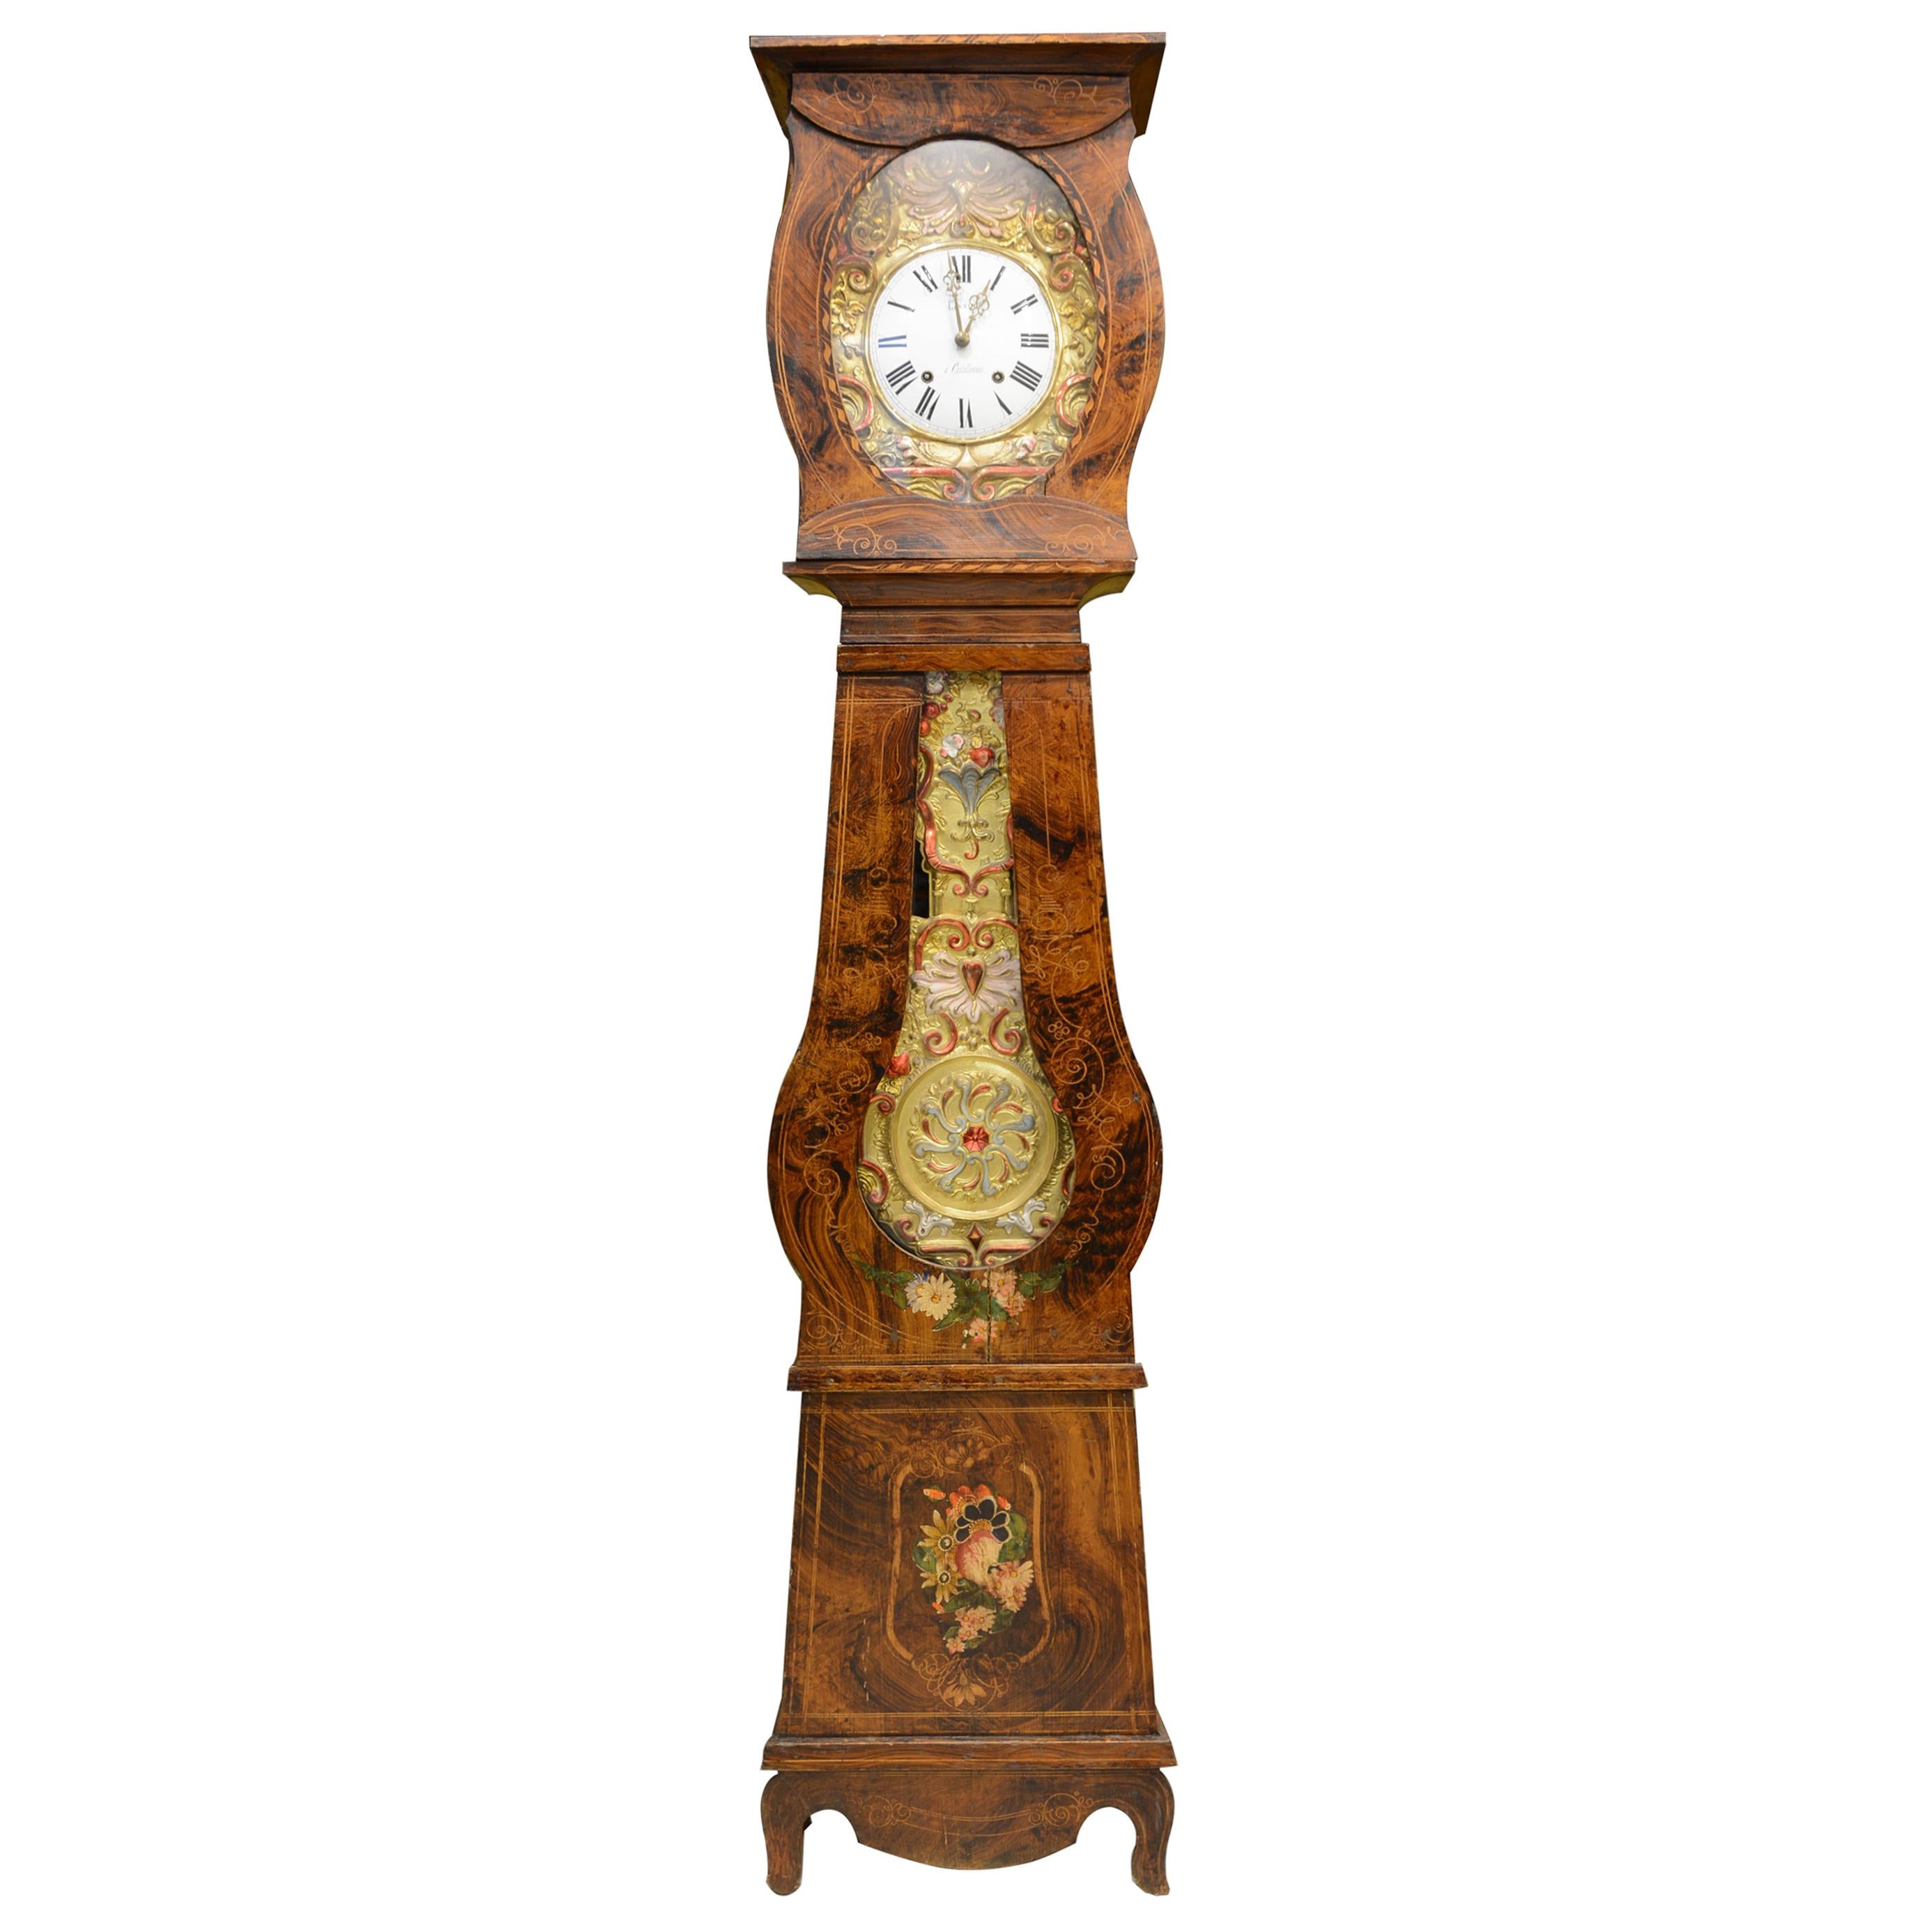 Balancier horloge pendulum French Comtoise coq clock uhr Morbier 18 e copie 2 